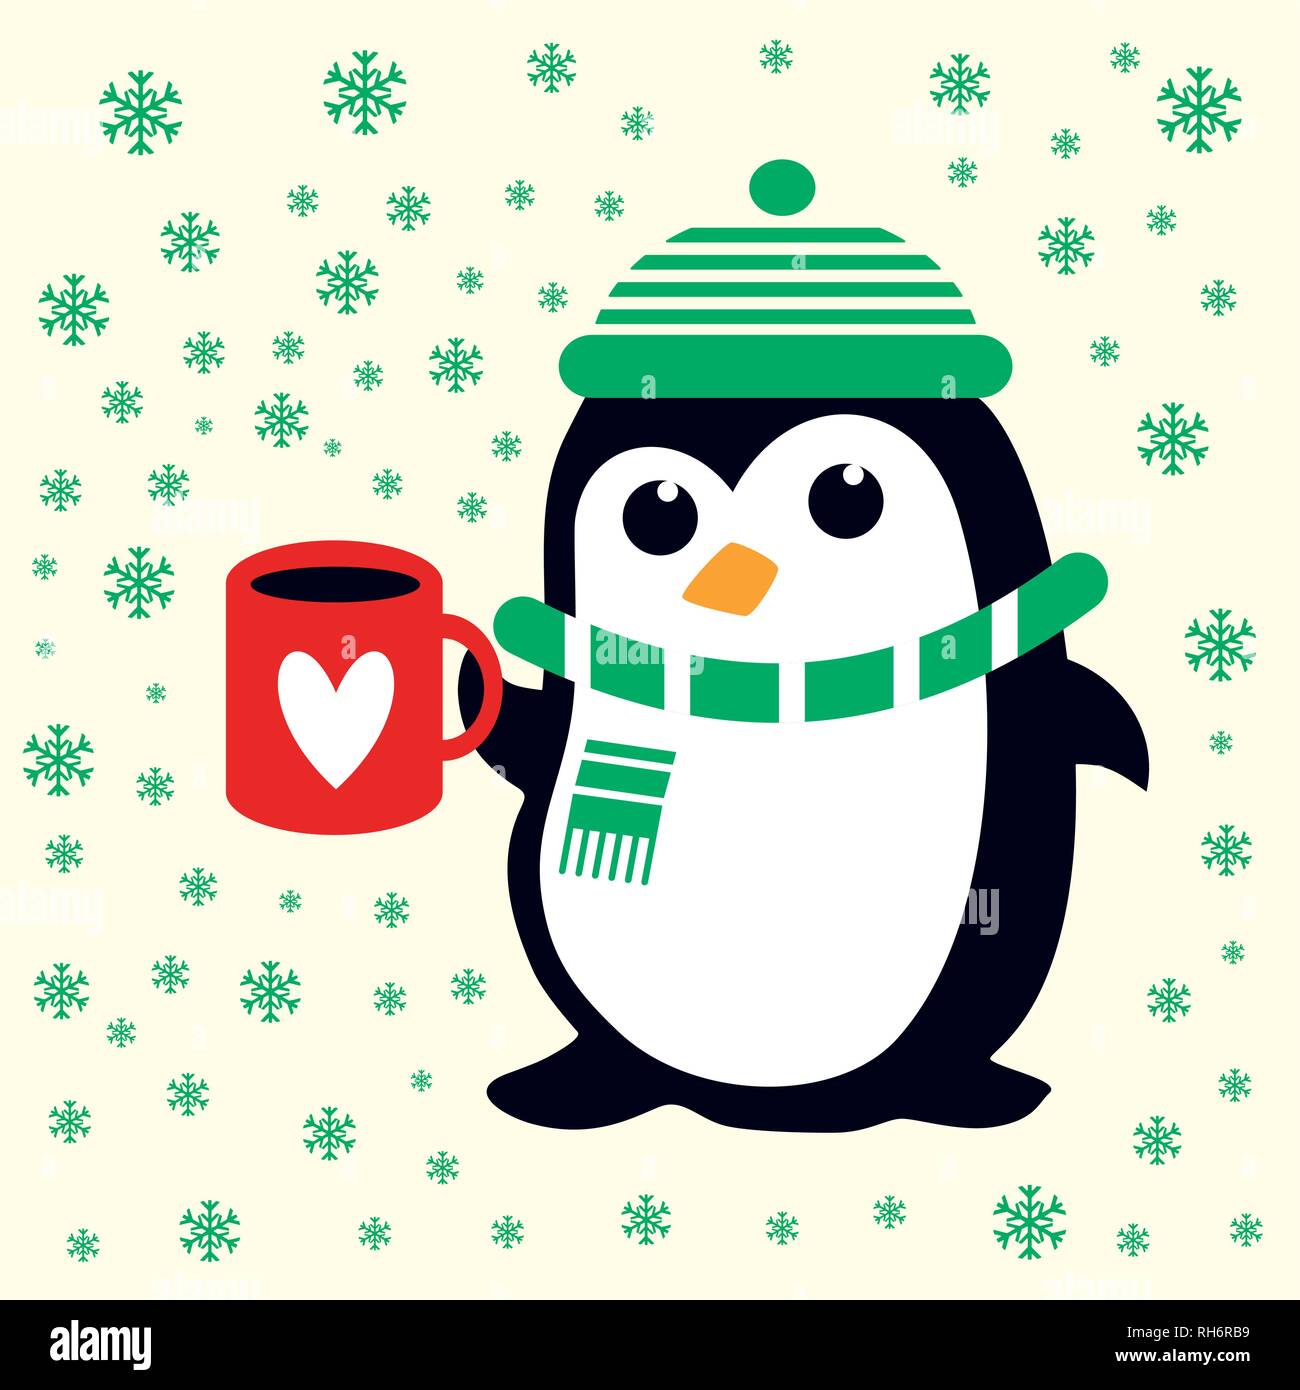 Funny cute Penguin in grüne Mütze, Schal mit refcup mit Herz. Für Baby- und Kinderzimmer Weihnachten Stoff, Tapeten, Geschenkverpackung. Stock Vektor